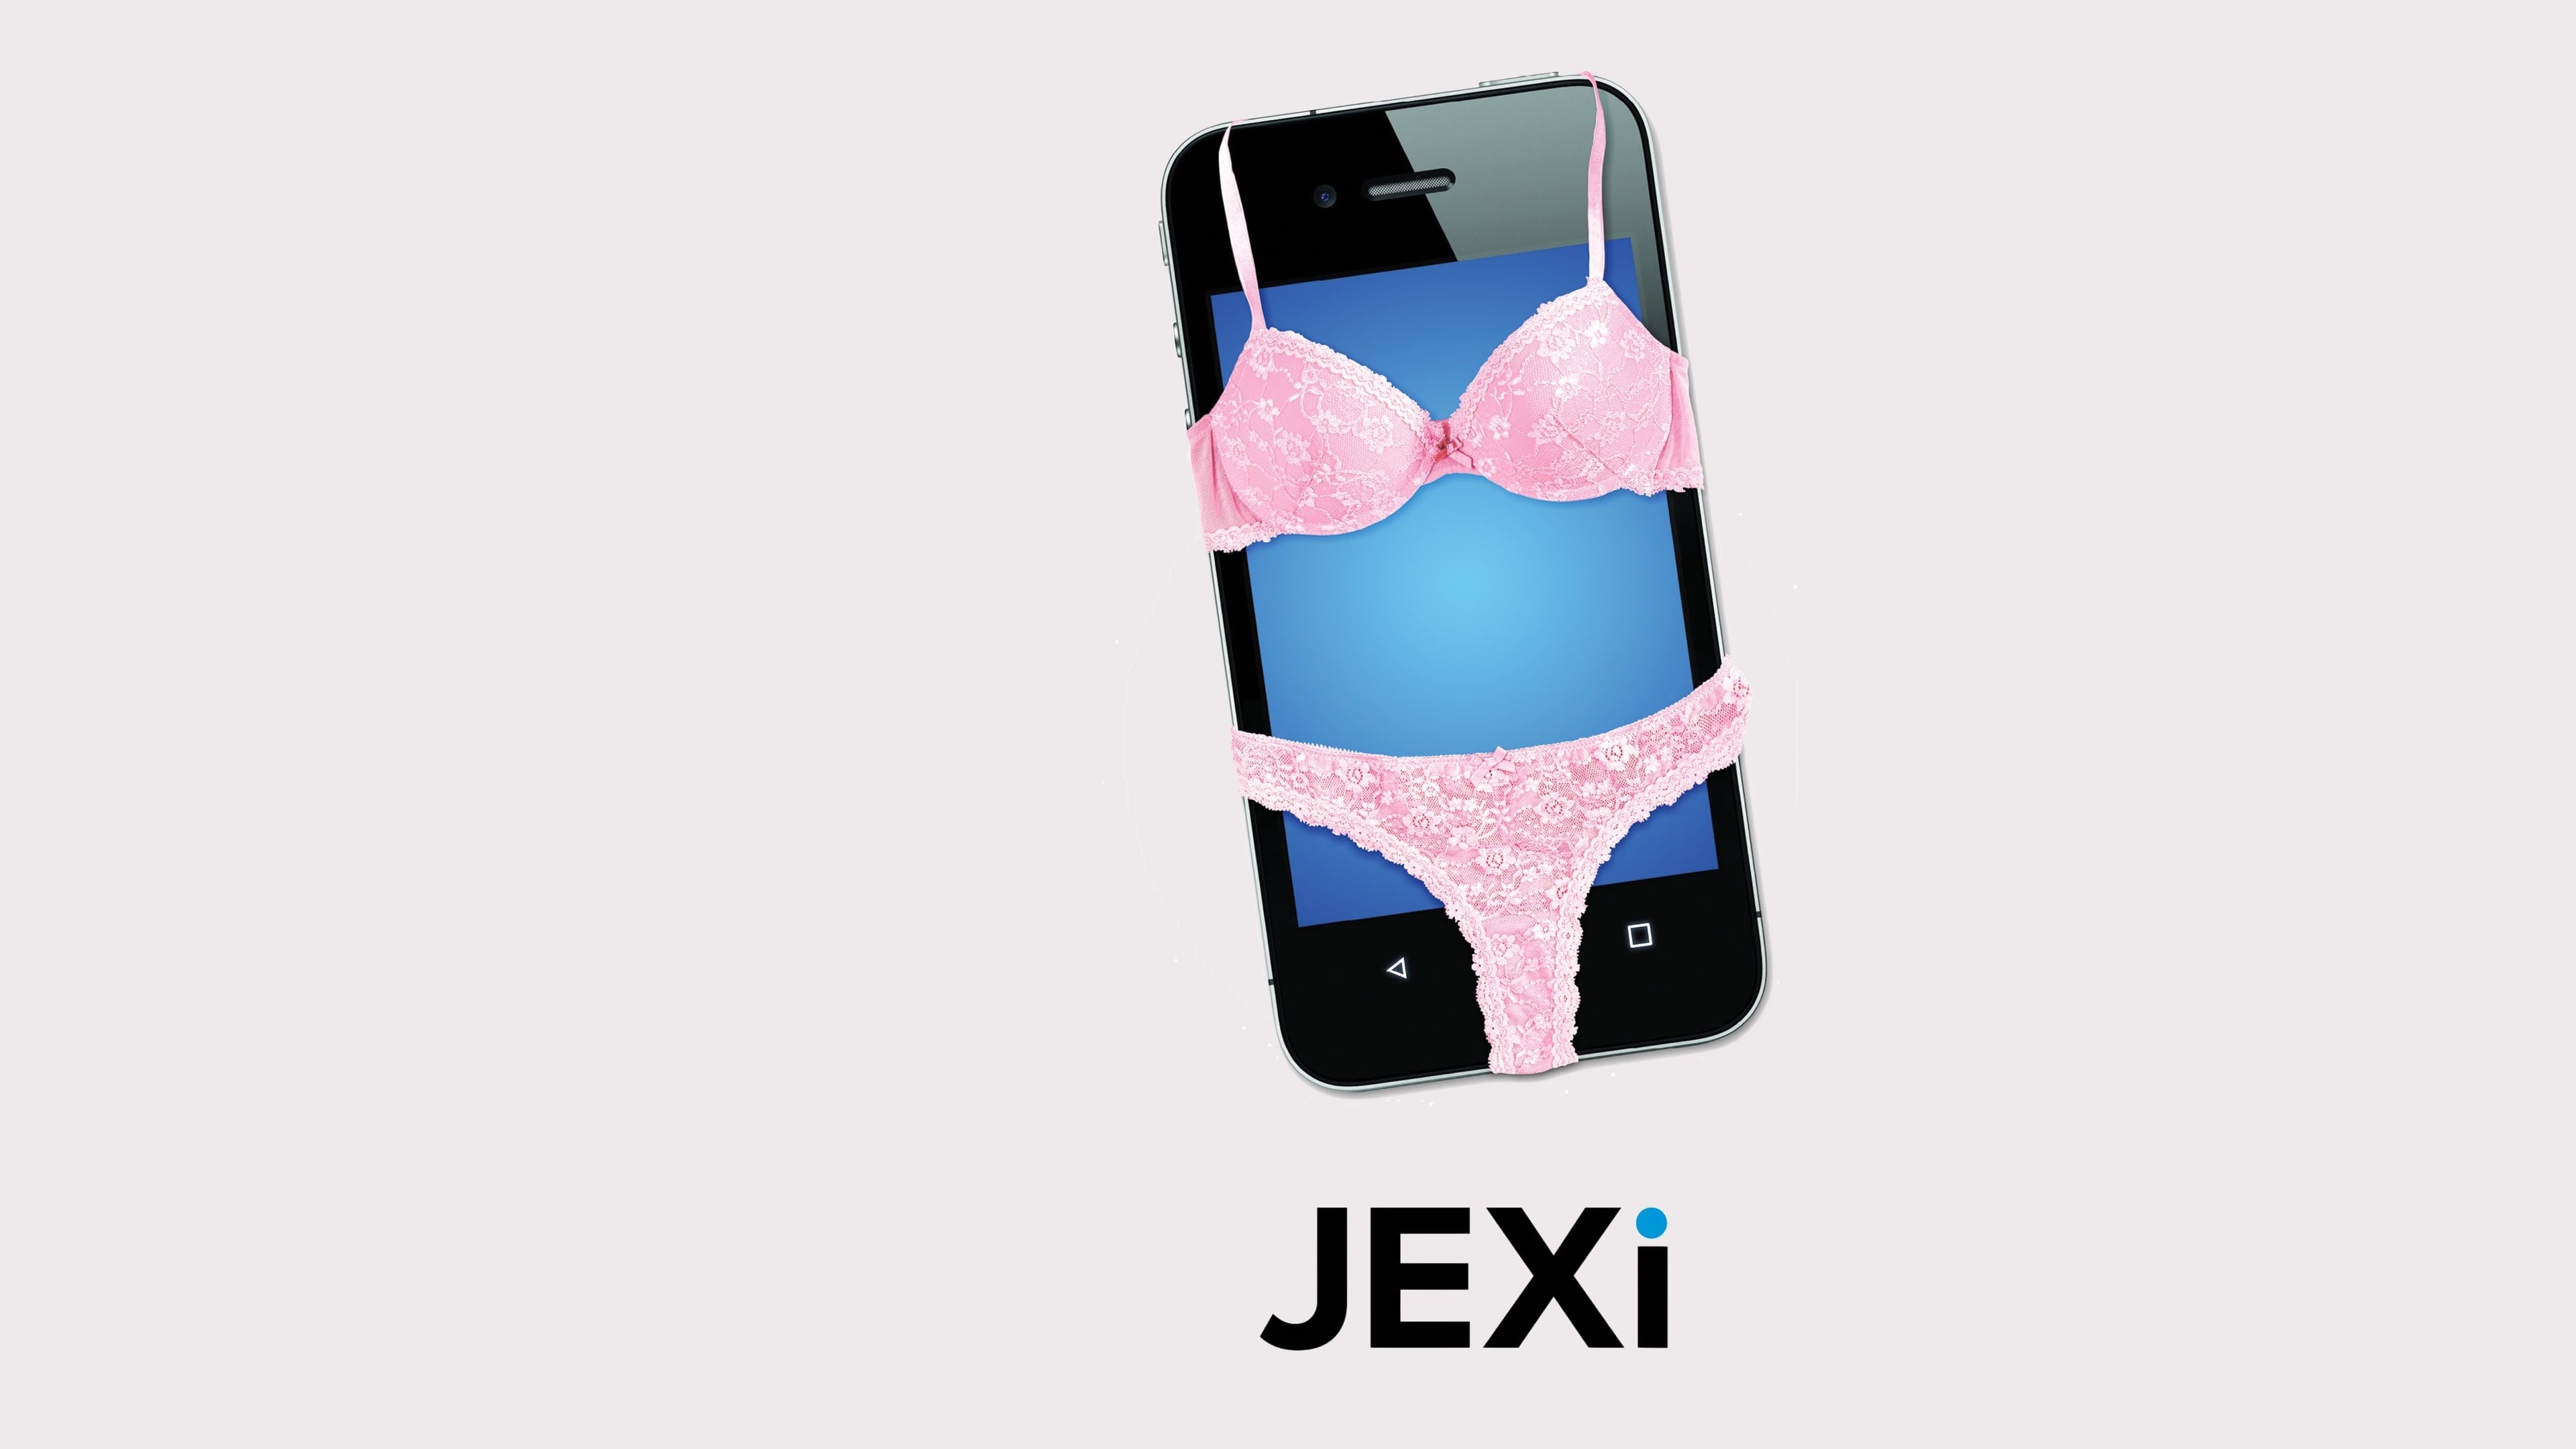 Jexi: Un celular sin filtro